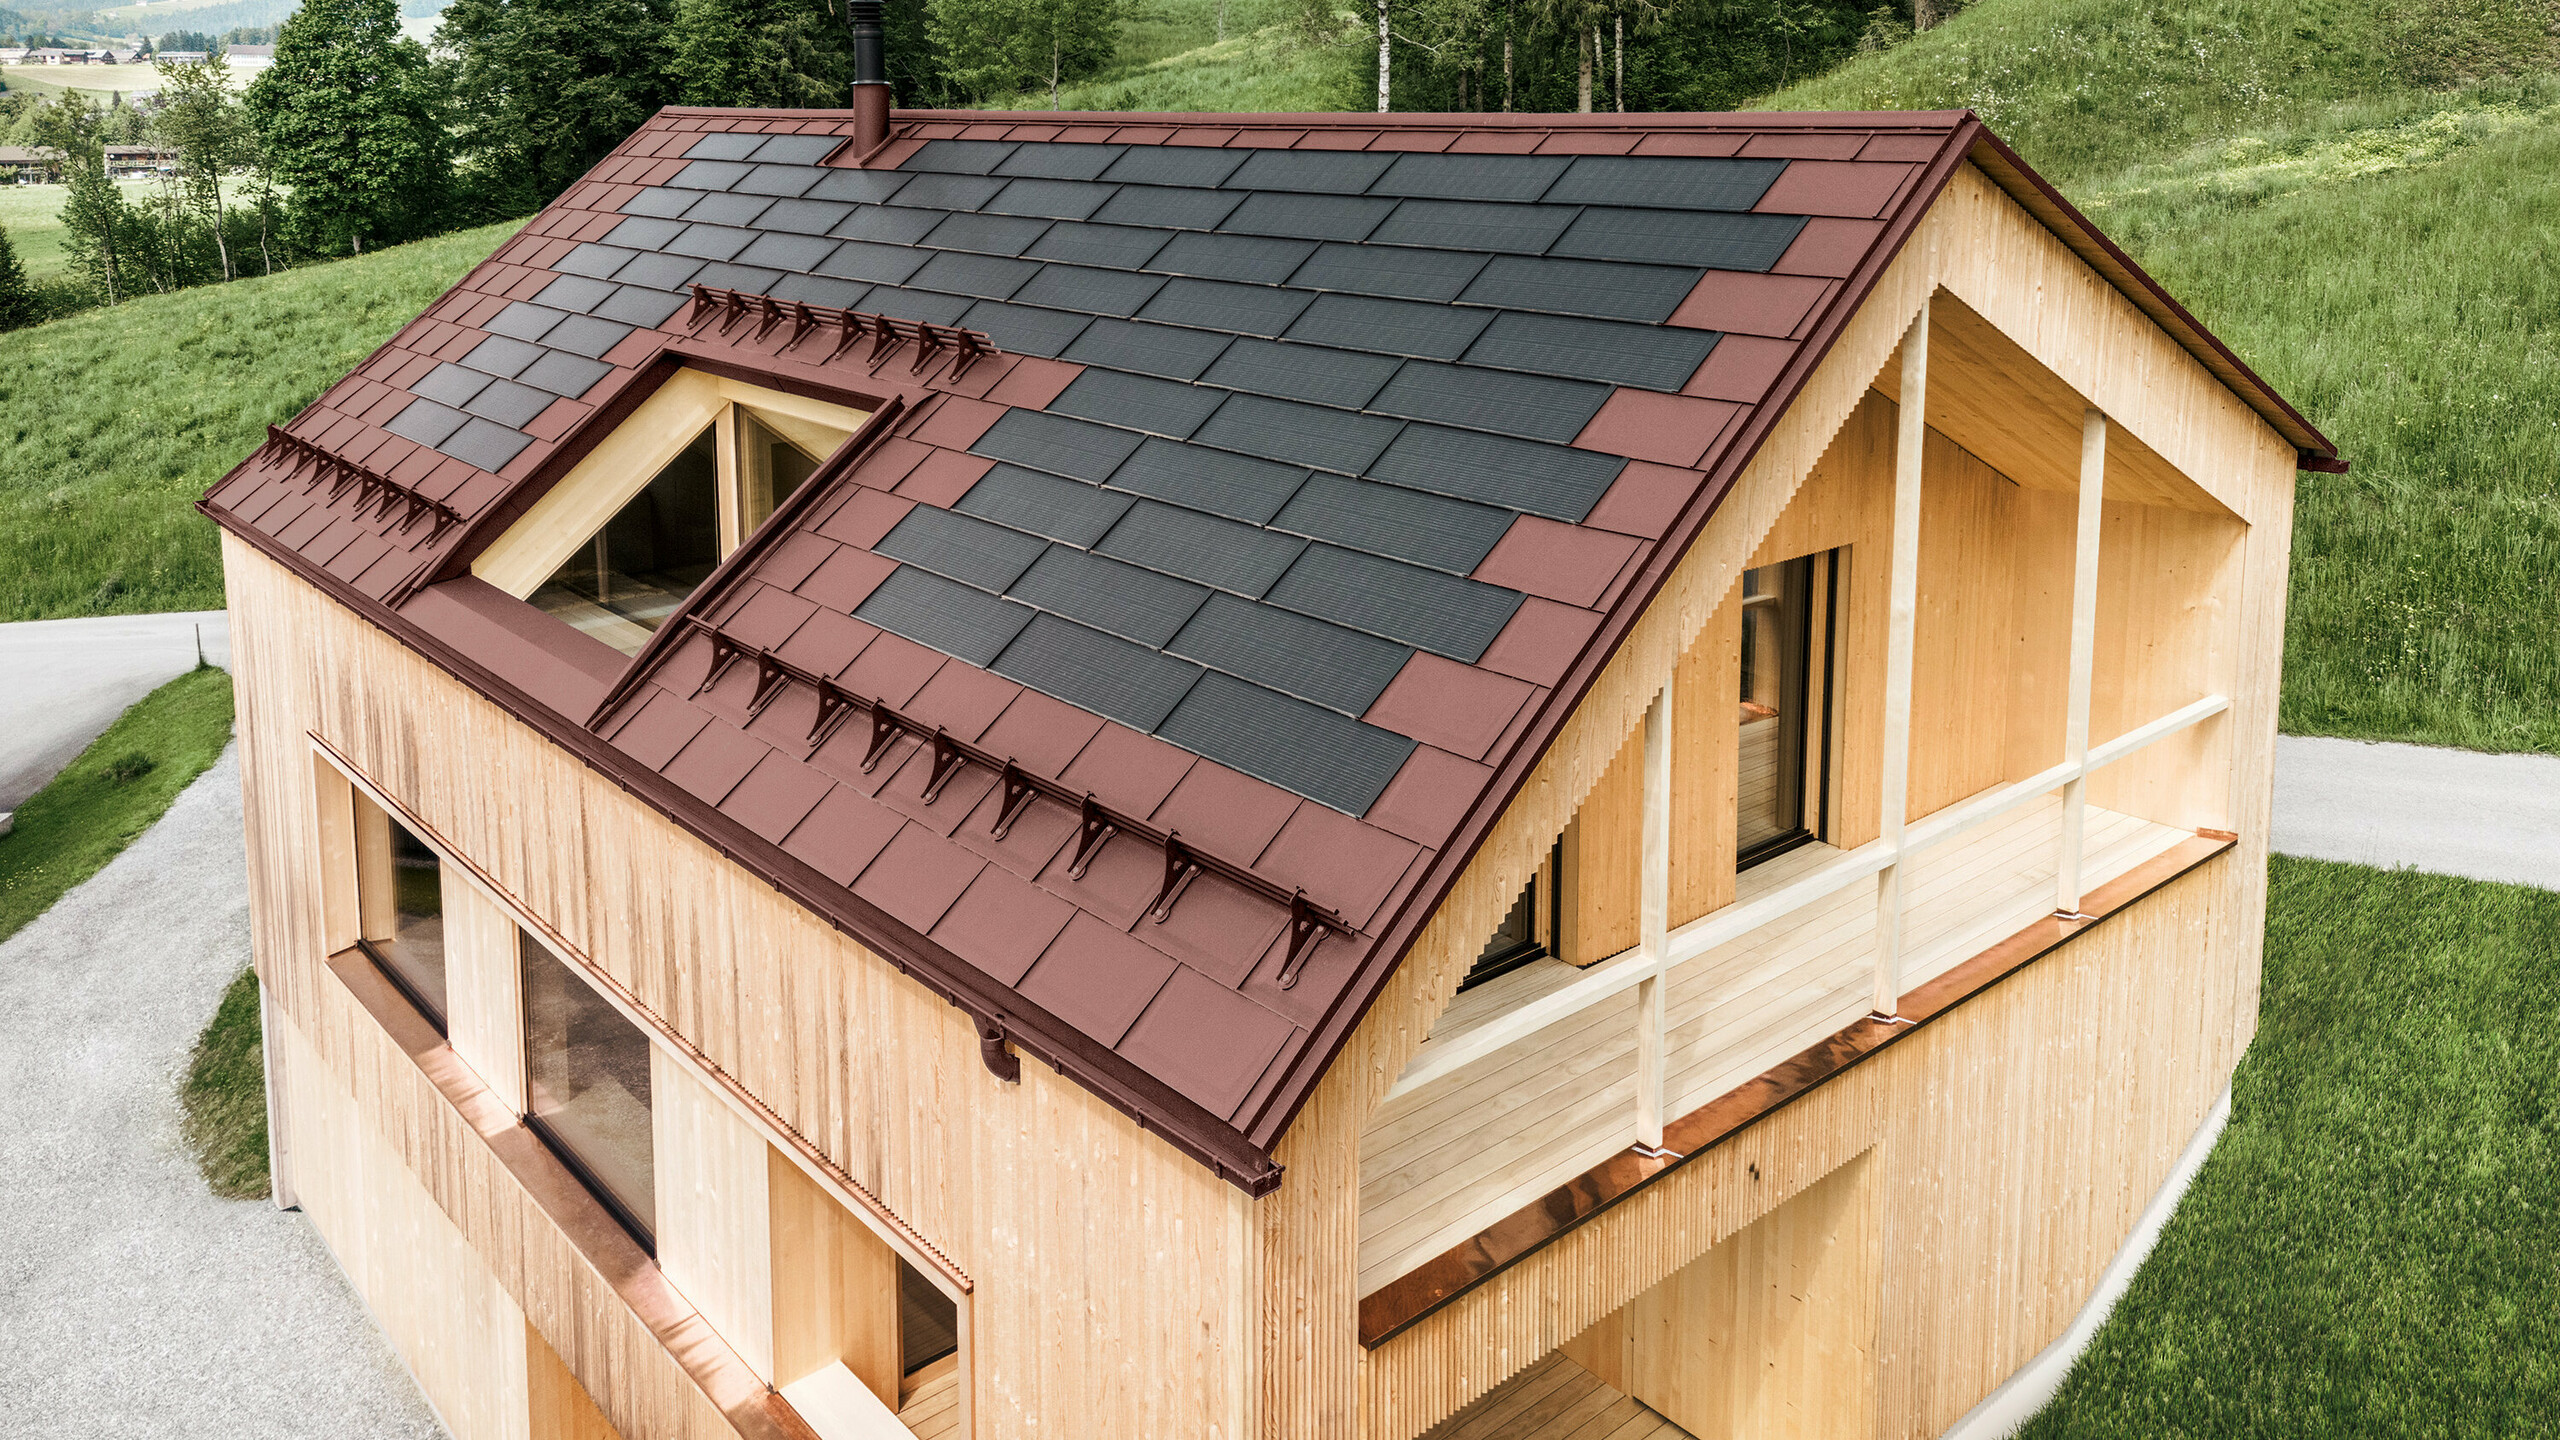 Einfamilienhaus im österreichischen Ort Egg mit der PREFA Solardachplatte und der Dachplatte R.16 in Oxydrot, kombiniert mit einer Holzfassade